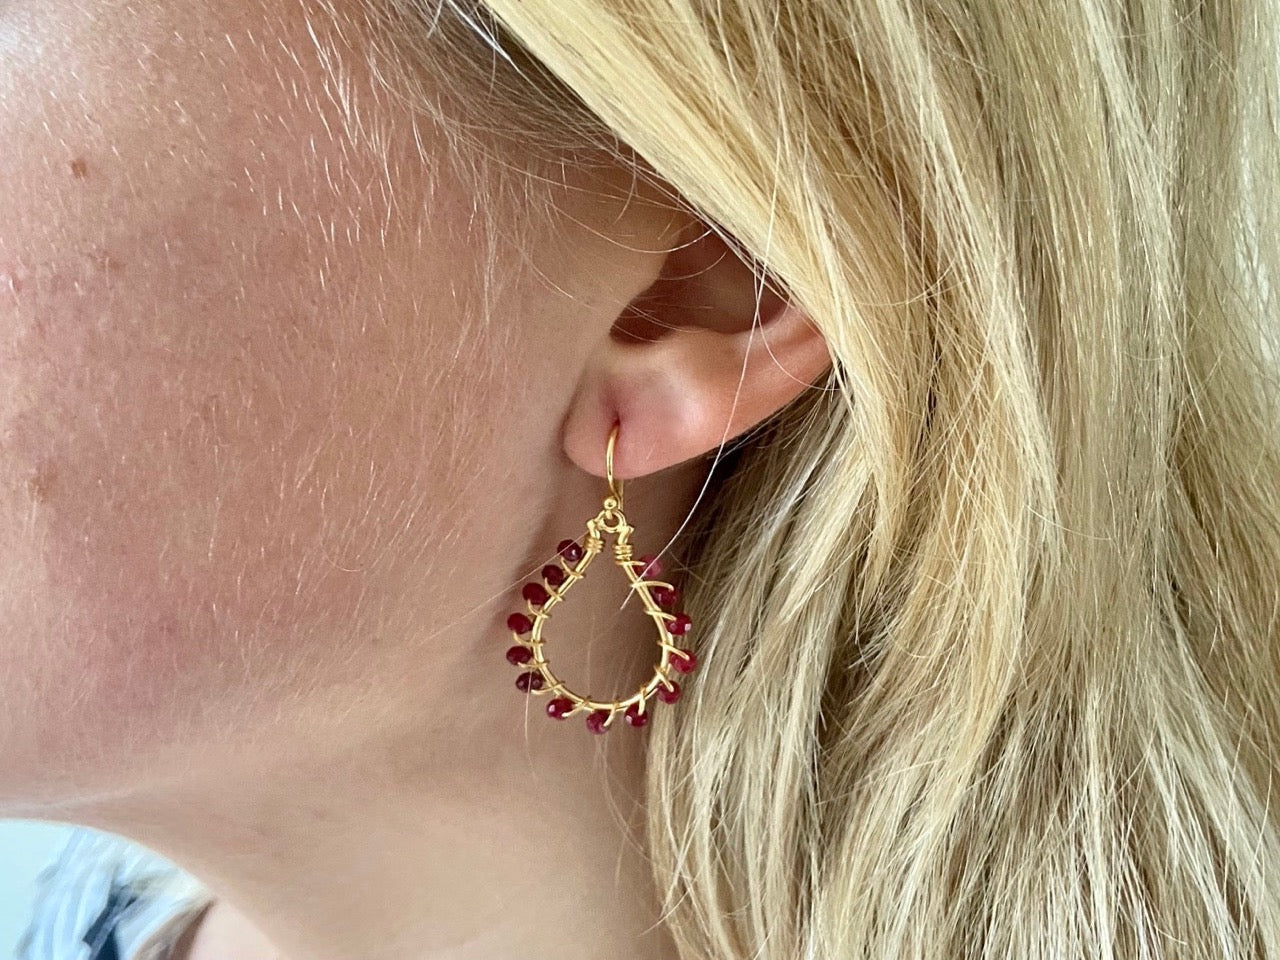 Birthstone earrings with ruby